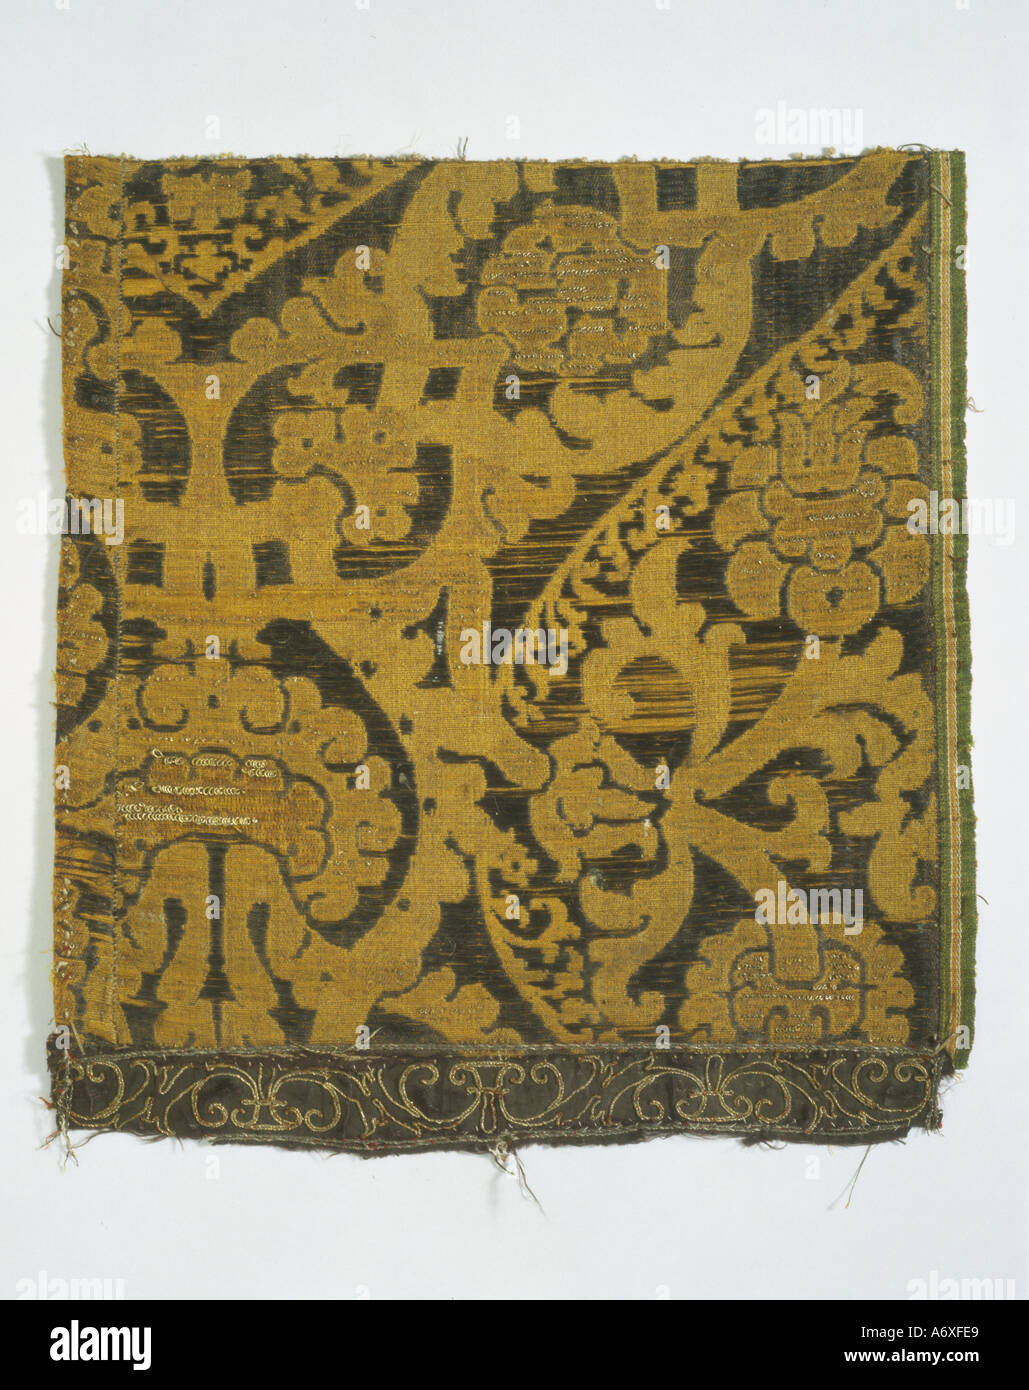 Seta tessuta tessile. Italia, del XVI secolo. Foto Stock